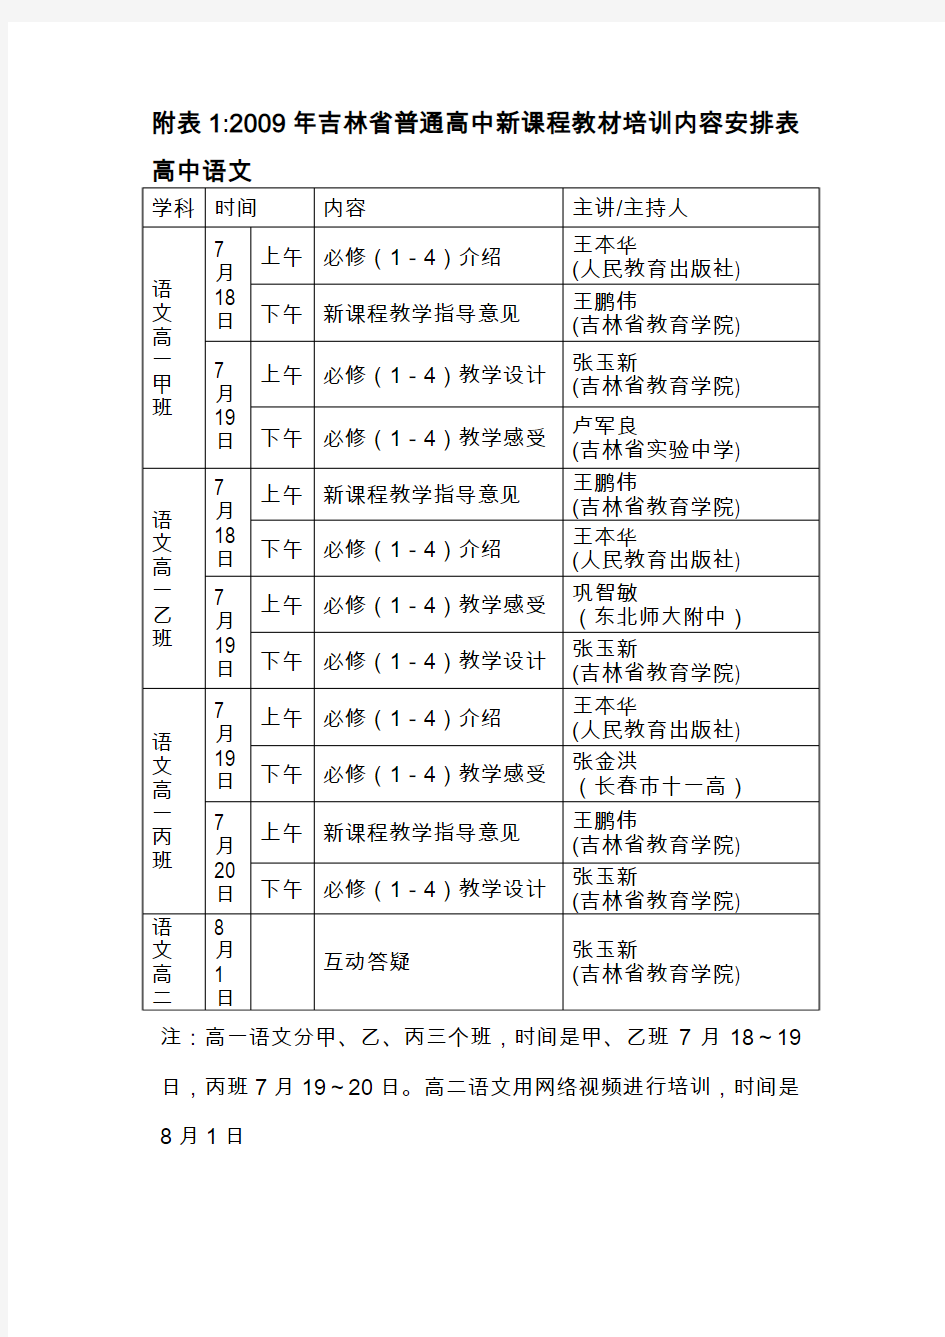 附表12009年吉林省普通高中新课程教材培训内容安排表